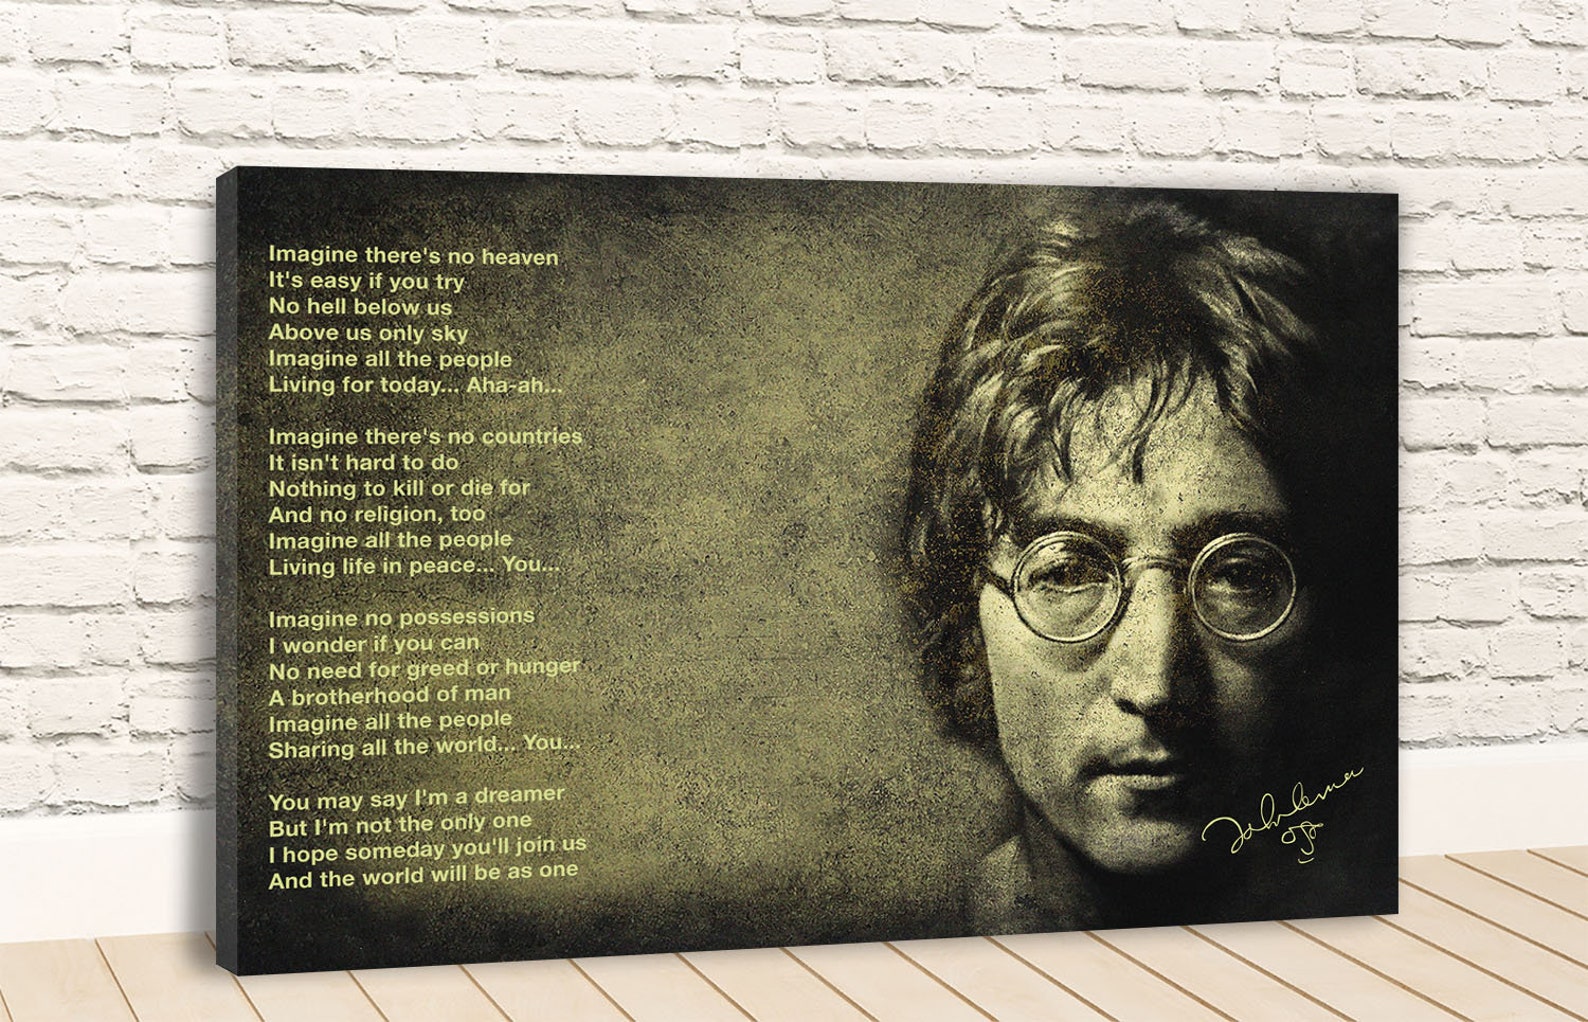 Леннон песня imagine. "Представьте себе: Джон Леннон" / imagine: John Lennon 1988 - картинки. Леннон представь себе. Imagine John Lennon Lyrics. John Lennon imagine обложка альбома.